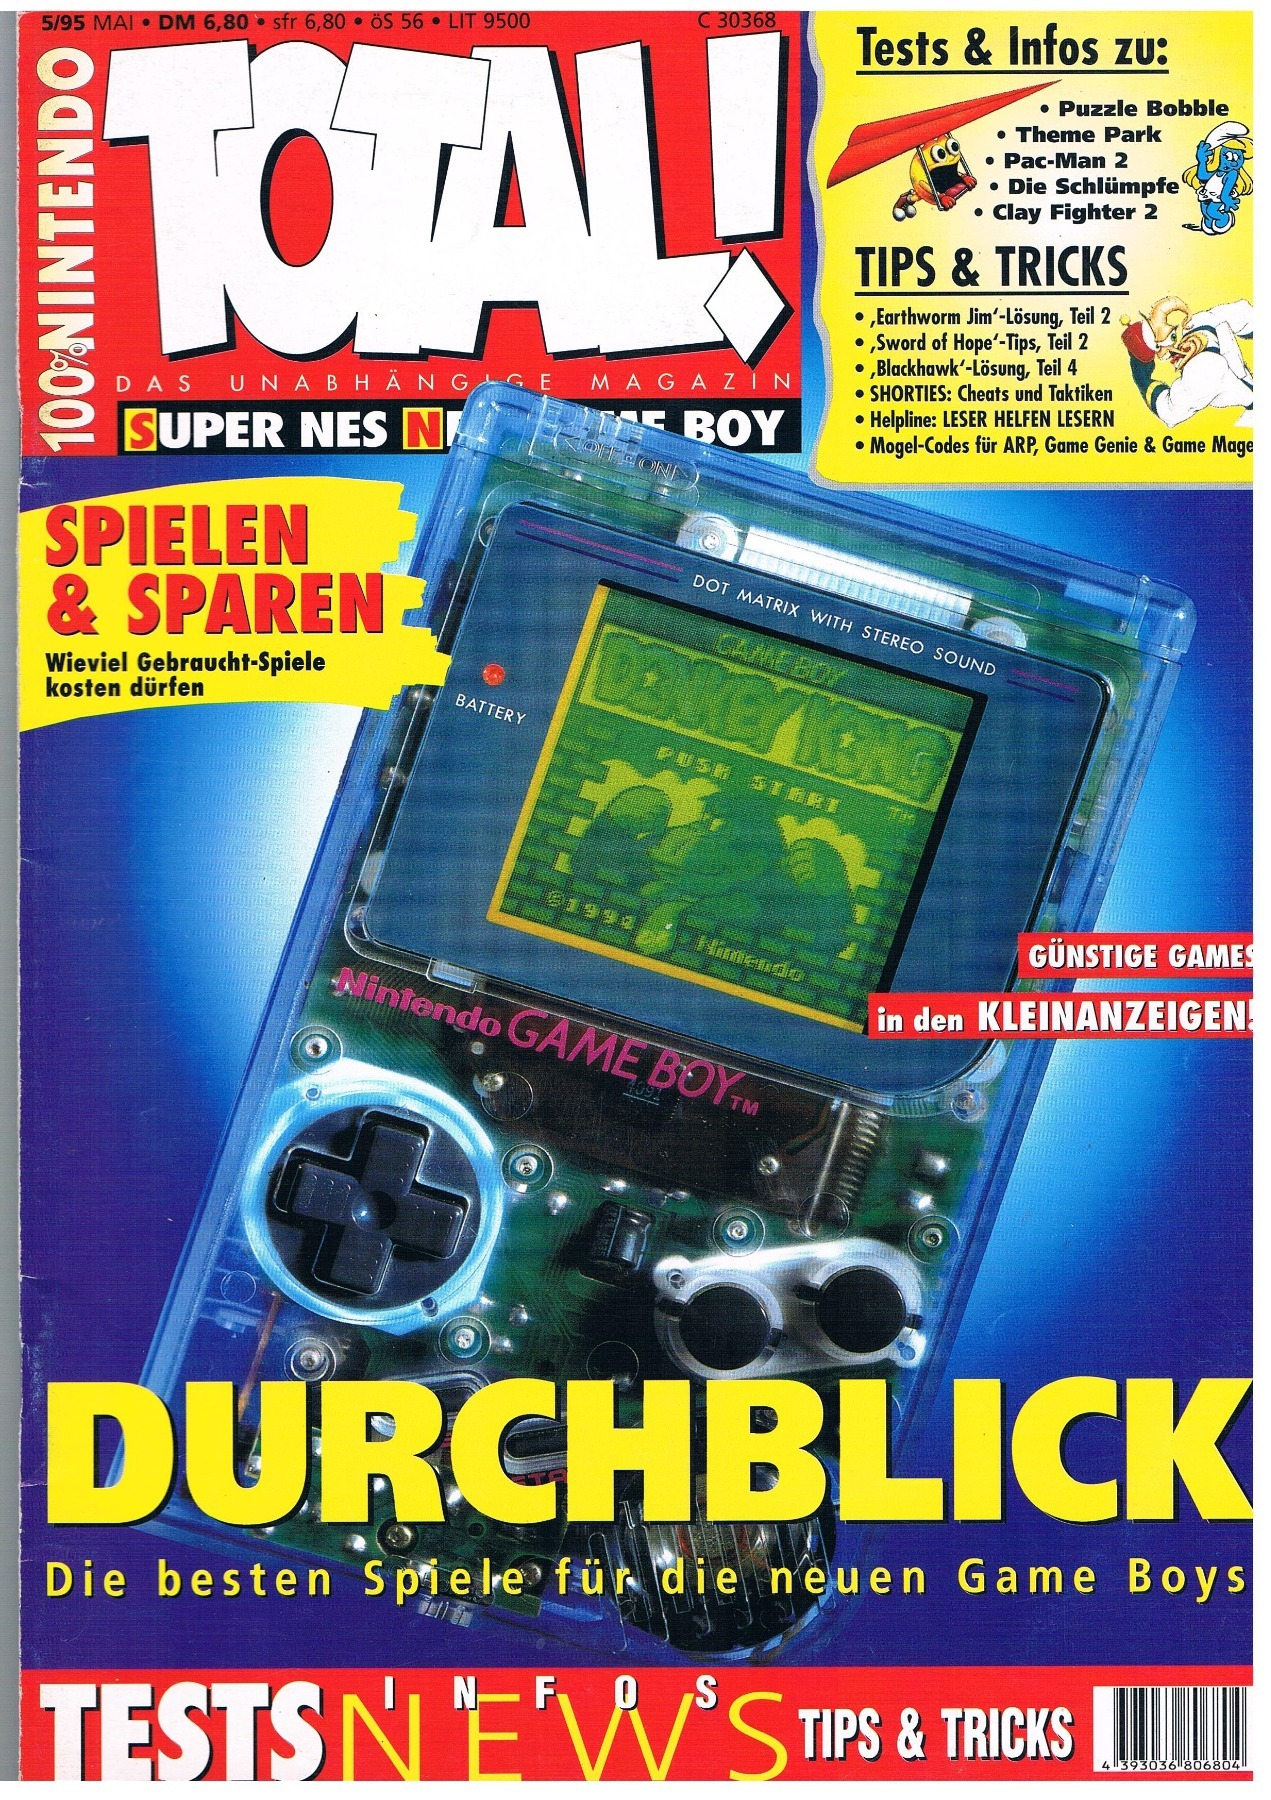 TOTAL Das unabhängige Magazin - 100% Nintendo - Ausgabe 5/95 1995